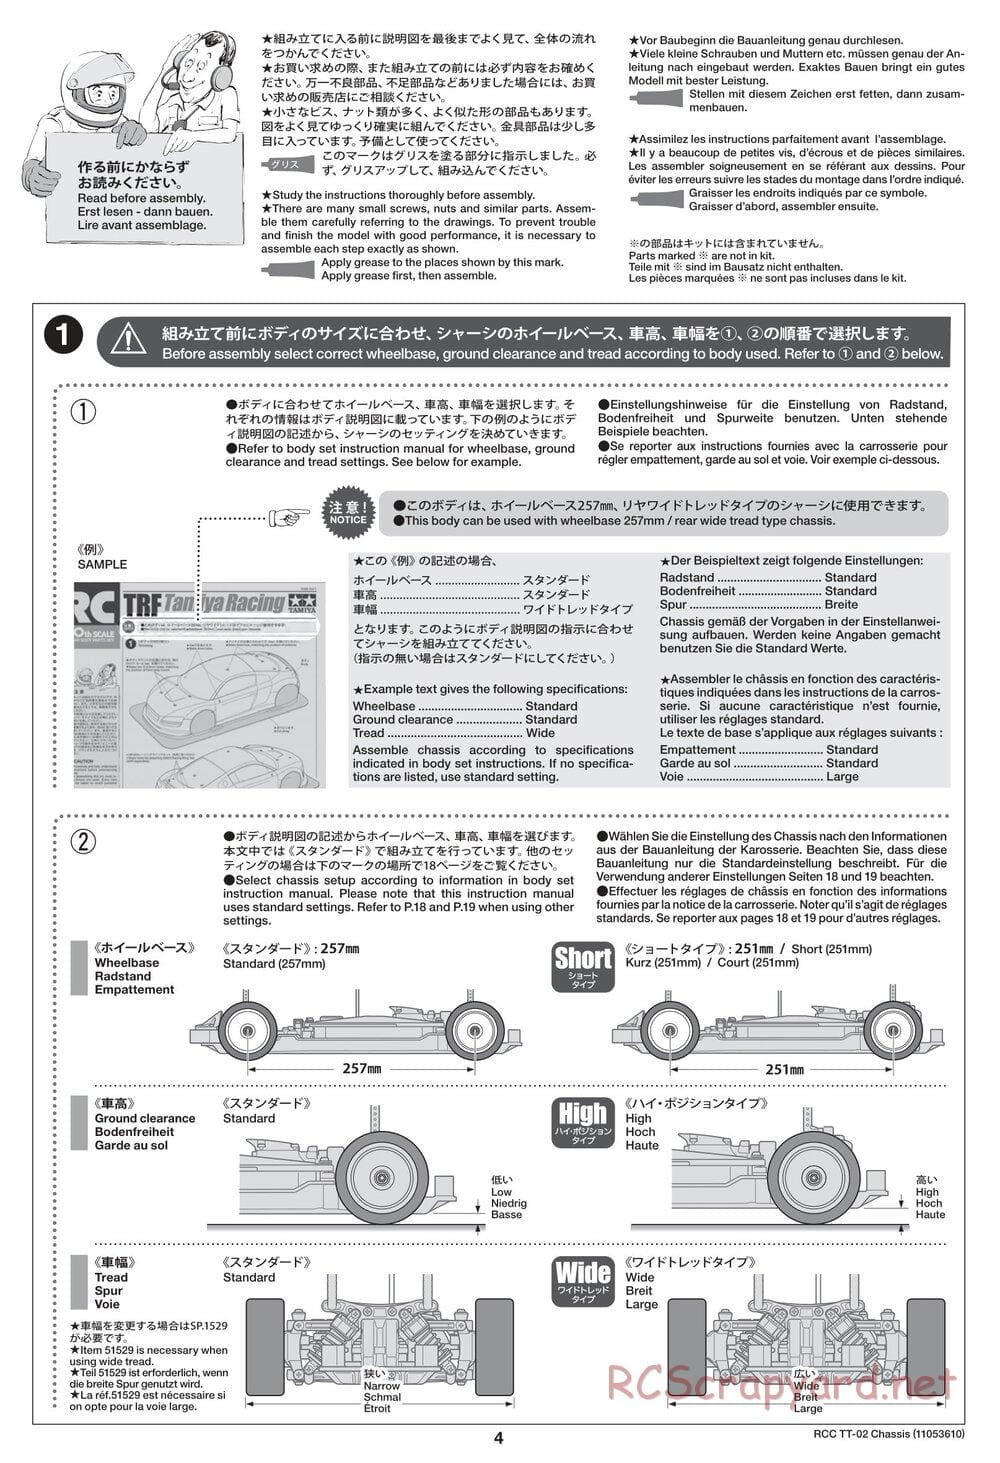 Tamiya - TT-02 Chassis - Manual - Page 4